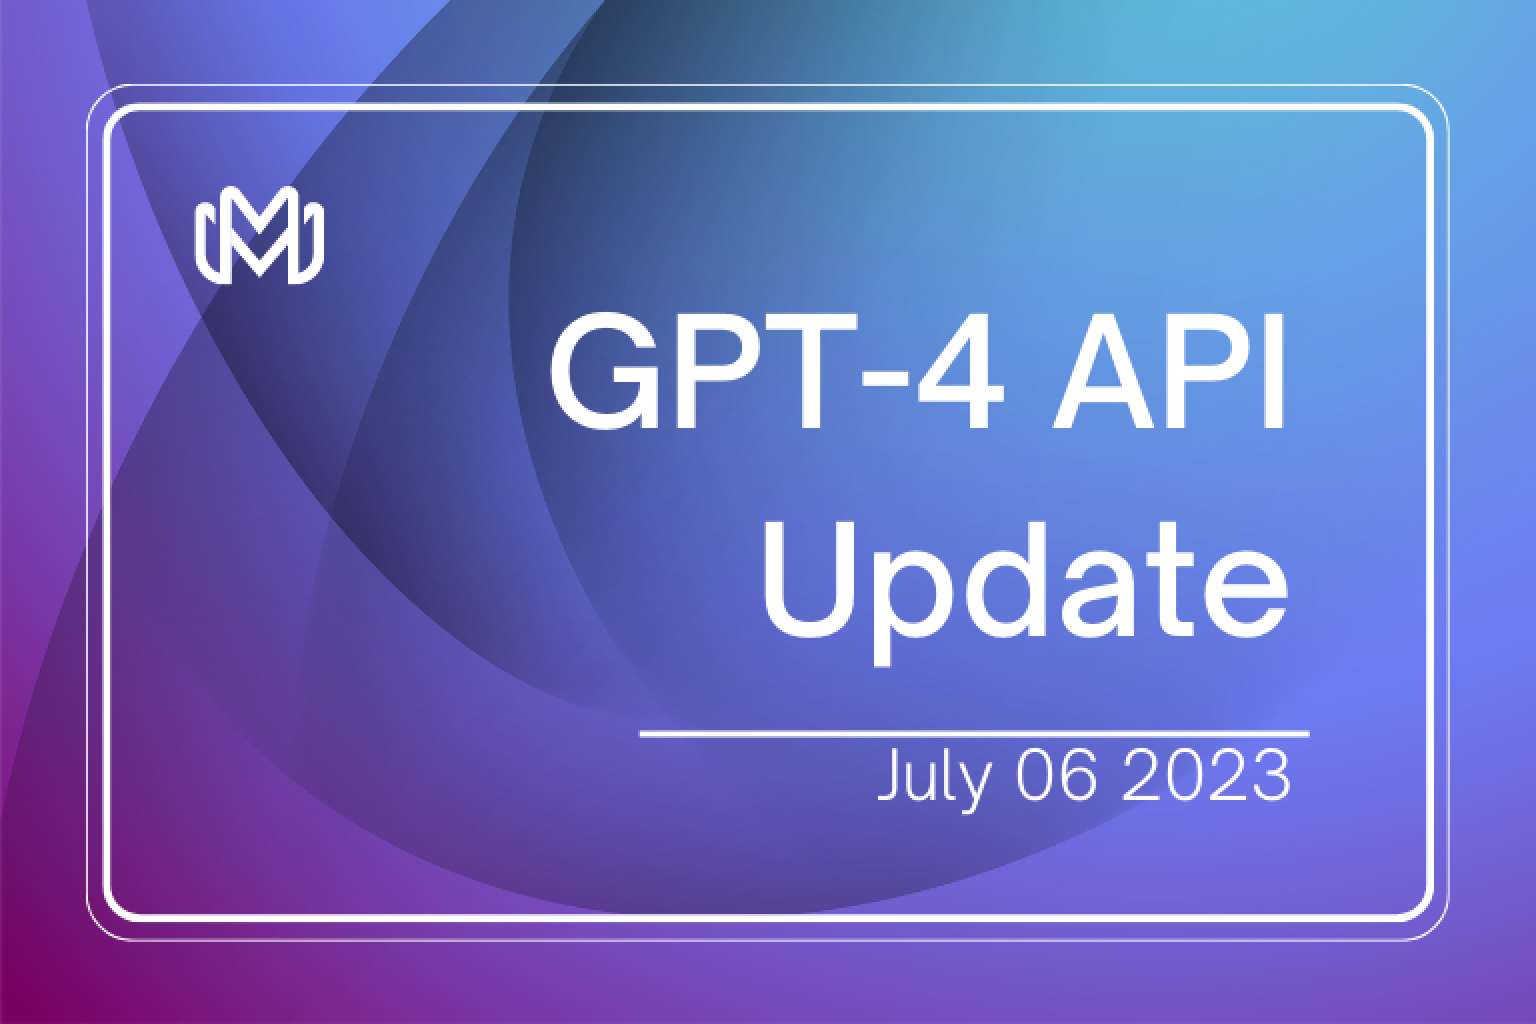 OpenAIからの最新のアップデートを紹介します。GPT-4 APIの一般提供、Chat Completions APIへの移行、革命的なChatGPTコードインタプリタについて調べてみましょう。これらのアップデートは、AIによる開発の再定義を目指しています。